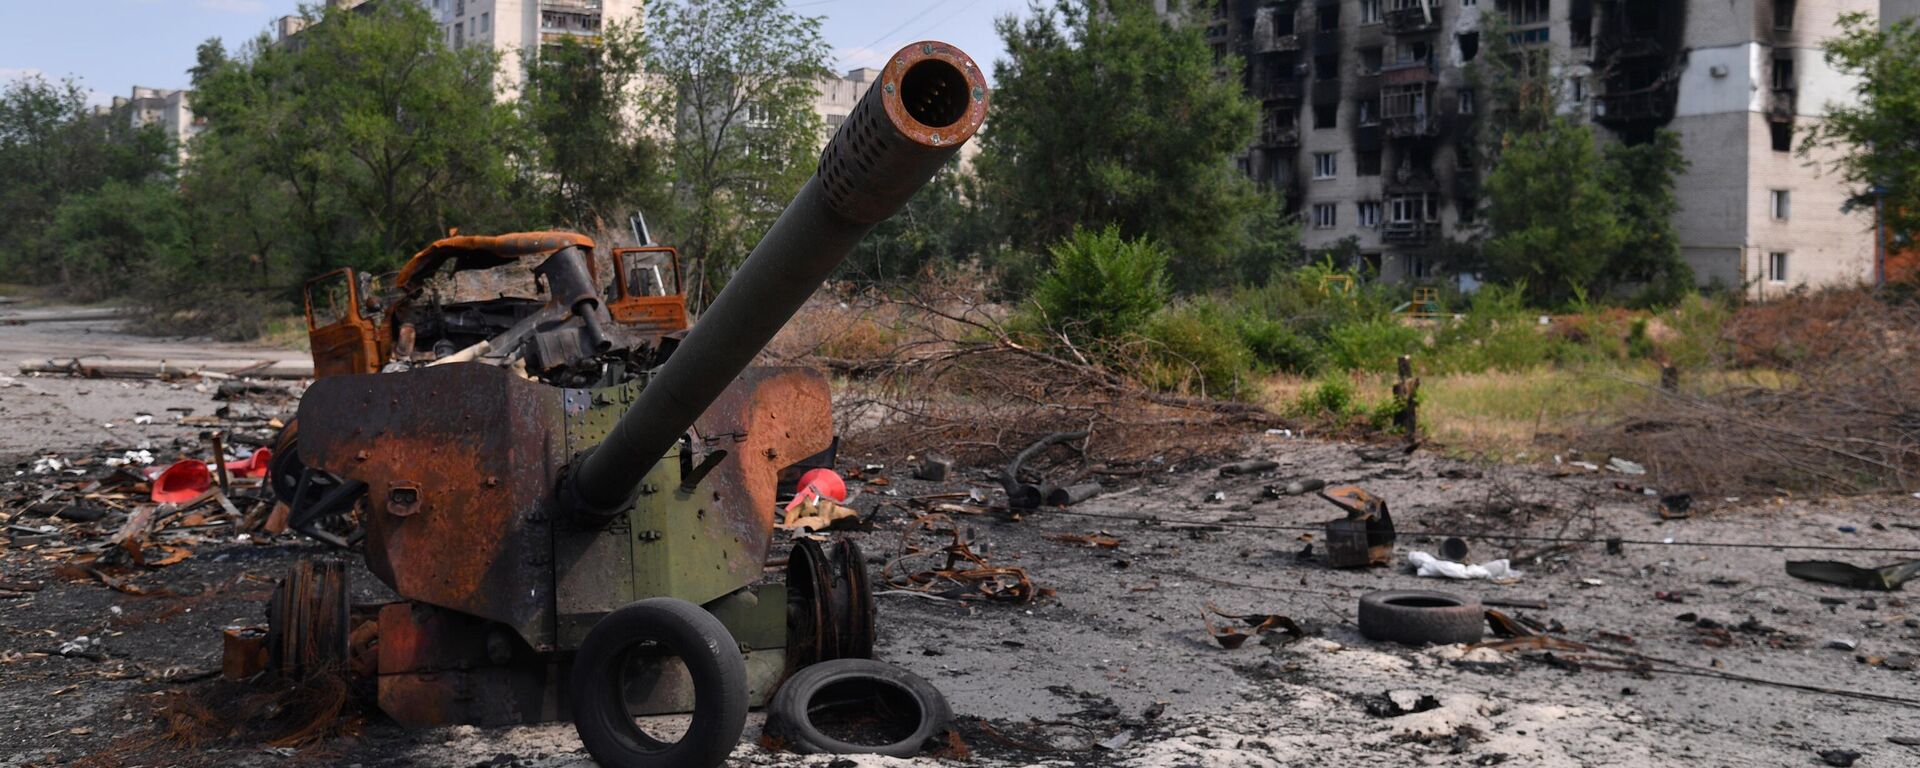 Arma de artilharia das Forças Armadas da Ucrânia destruída em Severodonetsk, no leste ucraniano, 11 de junho de 2022 - Sputnik Brasil, 1920, 05.07.2022